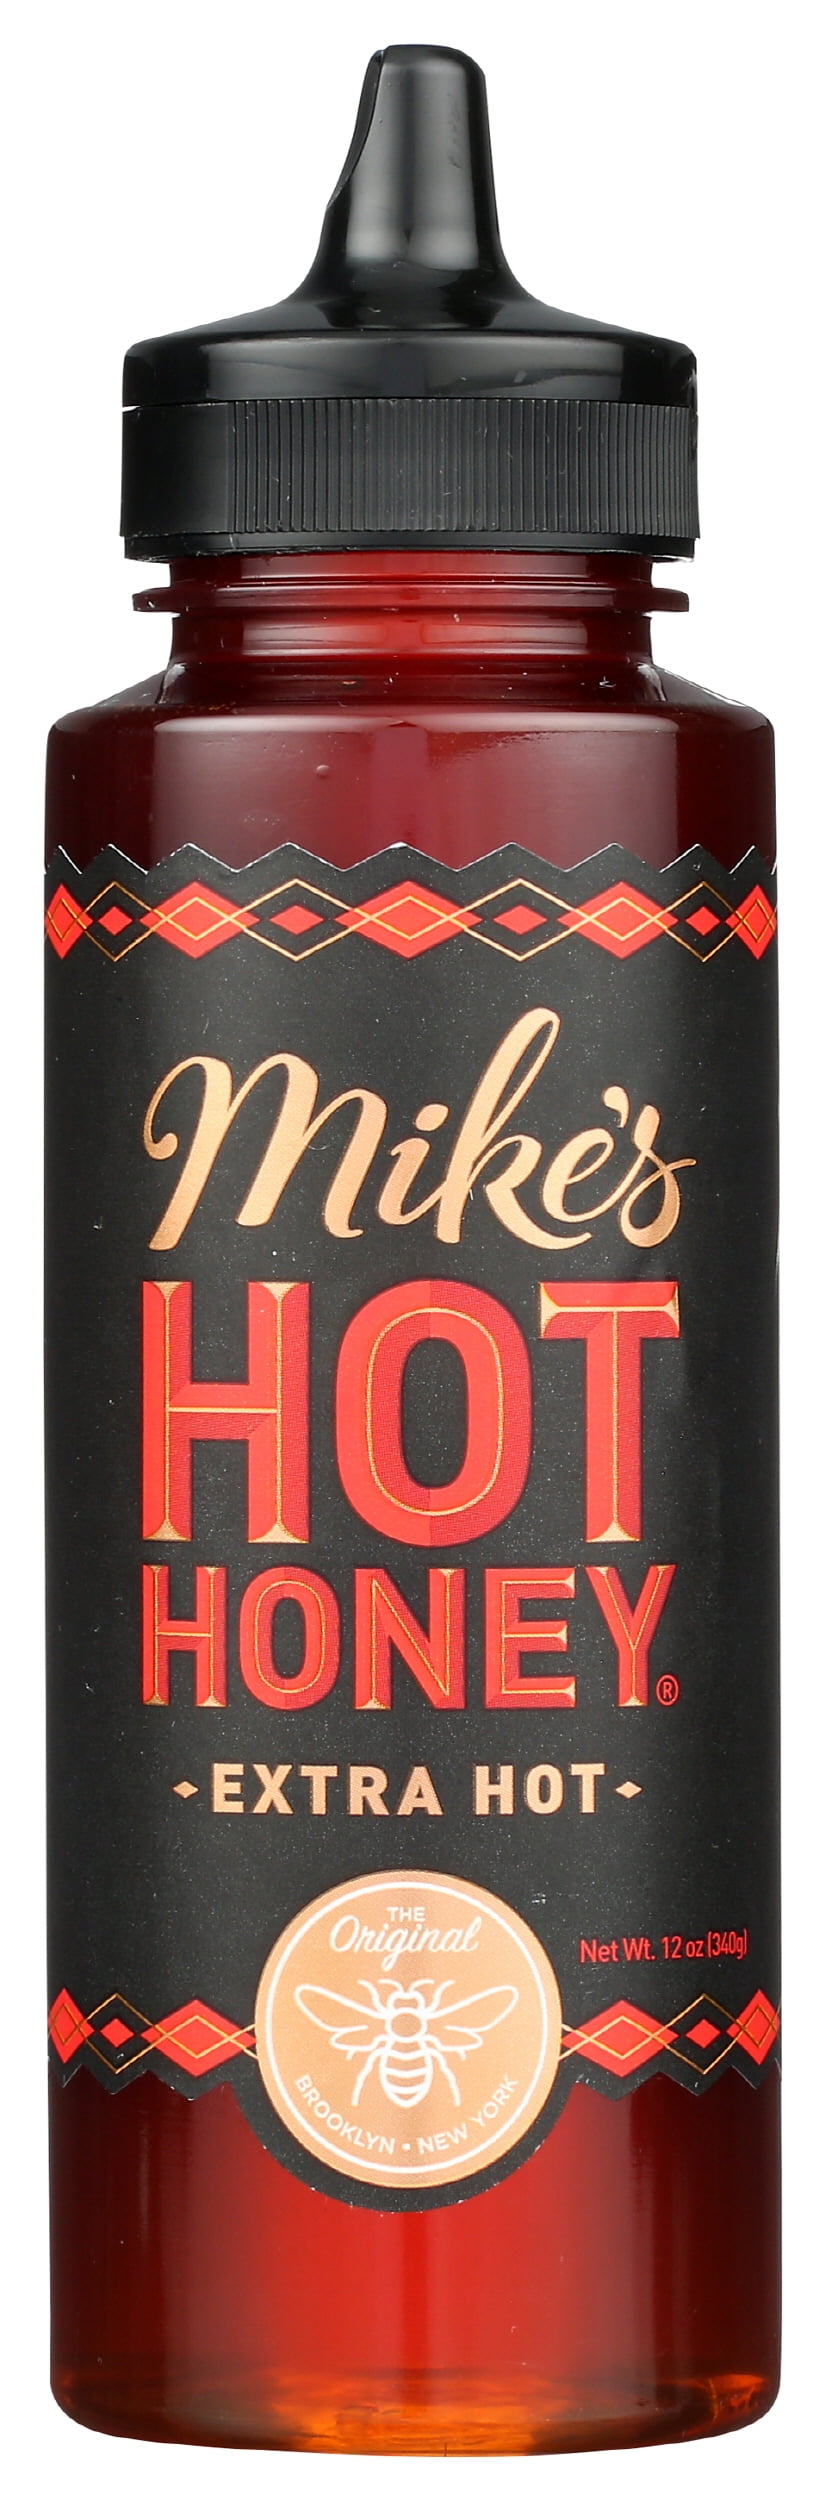 Mike's Hot Honey Extra Hot Honey with a Kick! Gluten-Free & Paleo, 12 oz